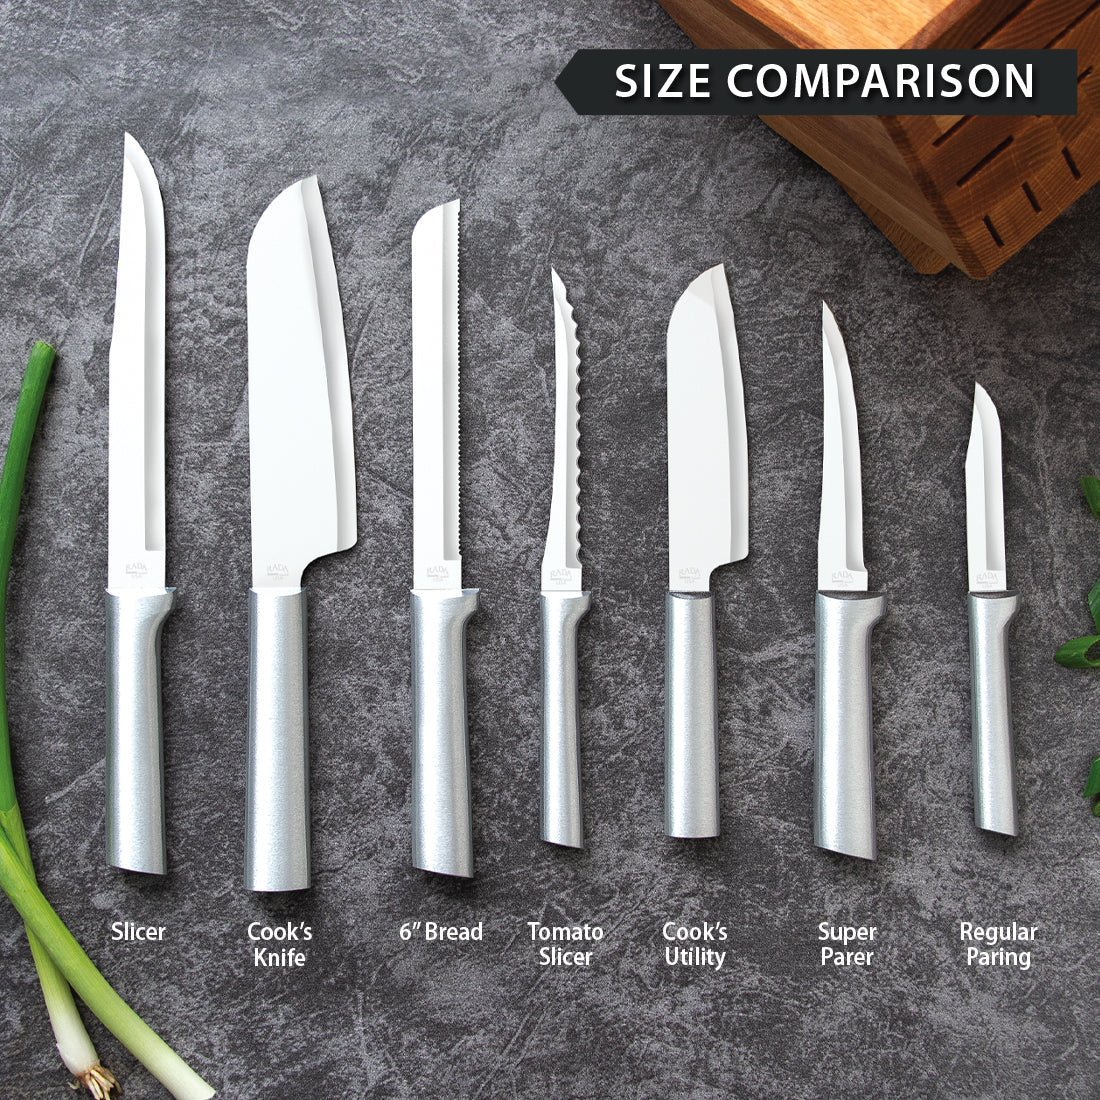 Rada Cutlery Spreader Knife – Stainless Steel Serrated Blade and Black Steel Resin Handle